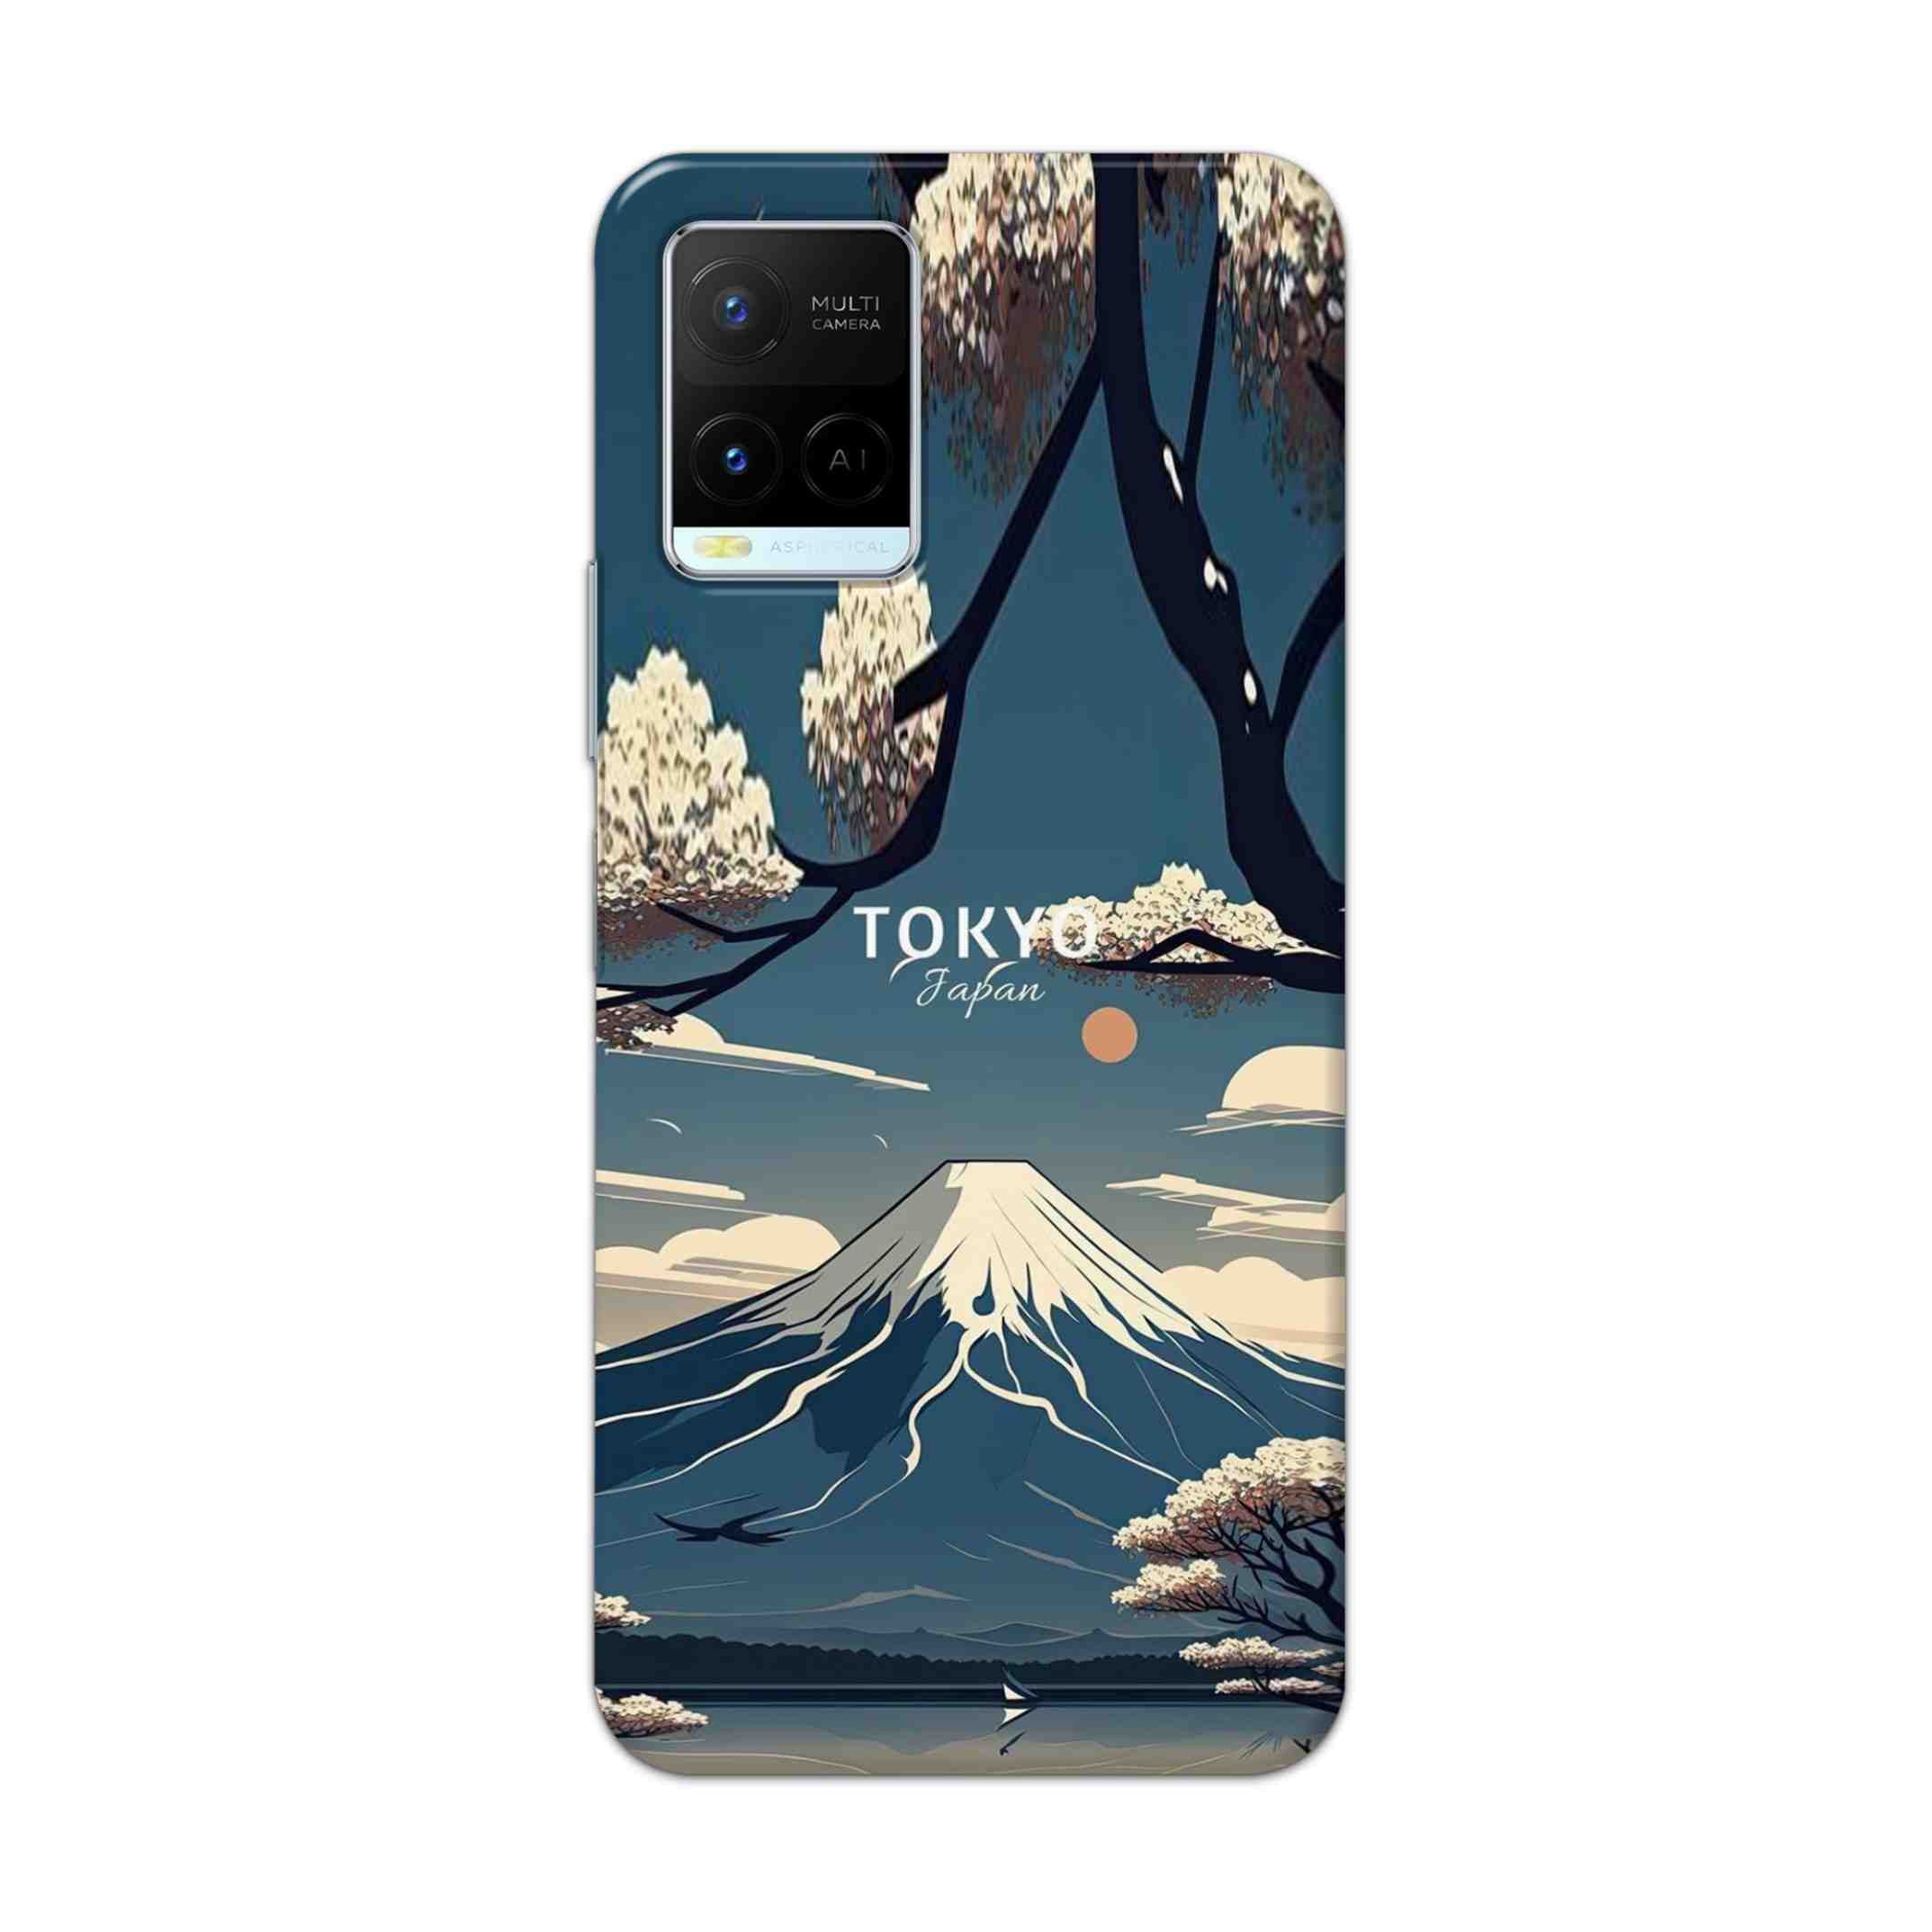 Buy Tokyo Hard Back Mobile Phone Case Cover For Vivo Y21 2021 Online